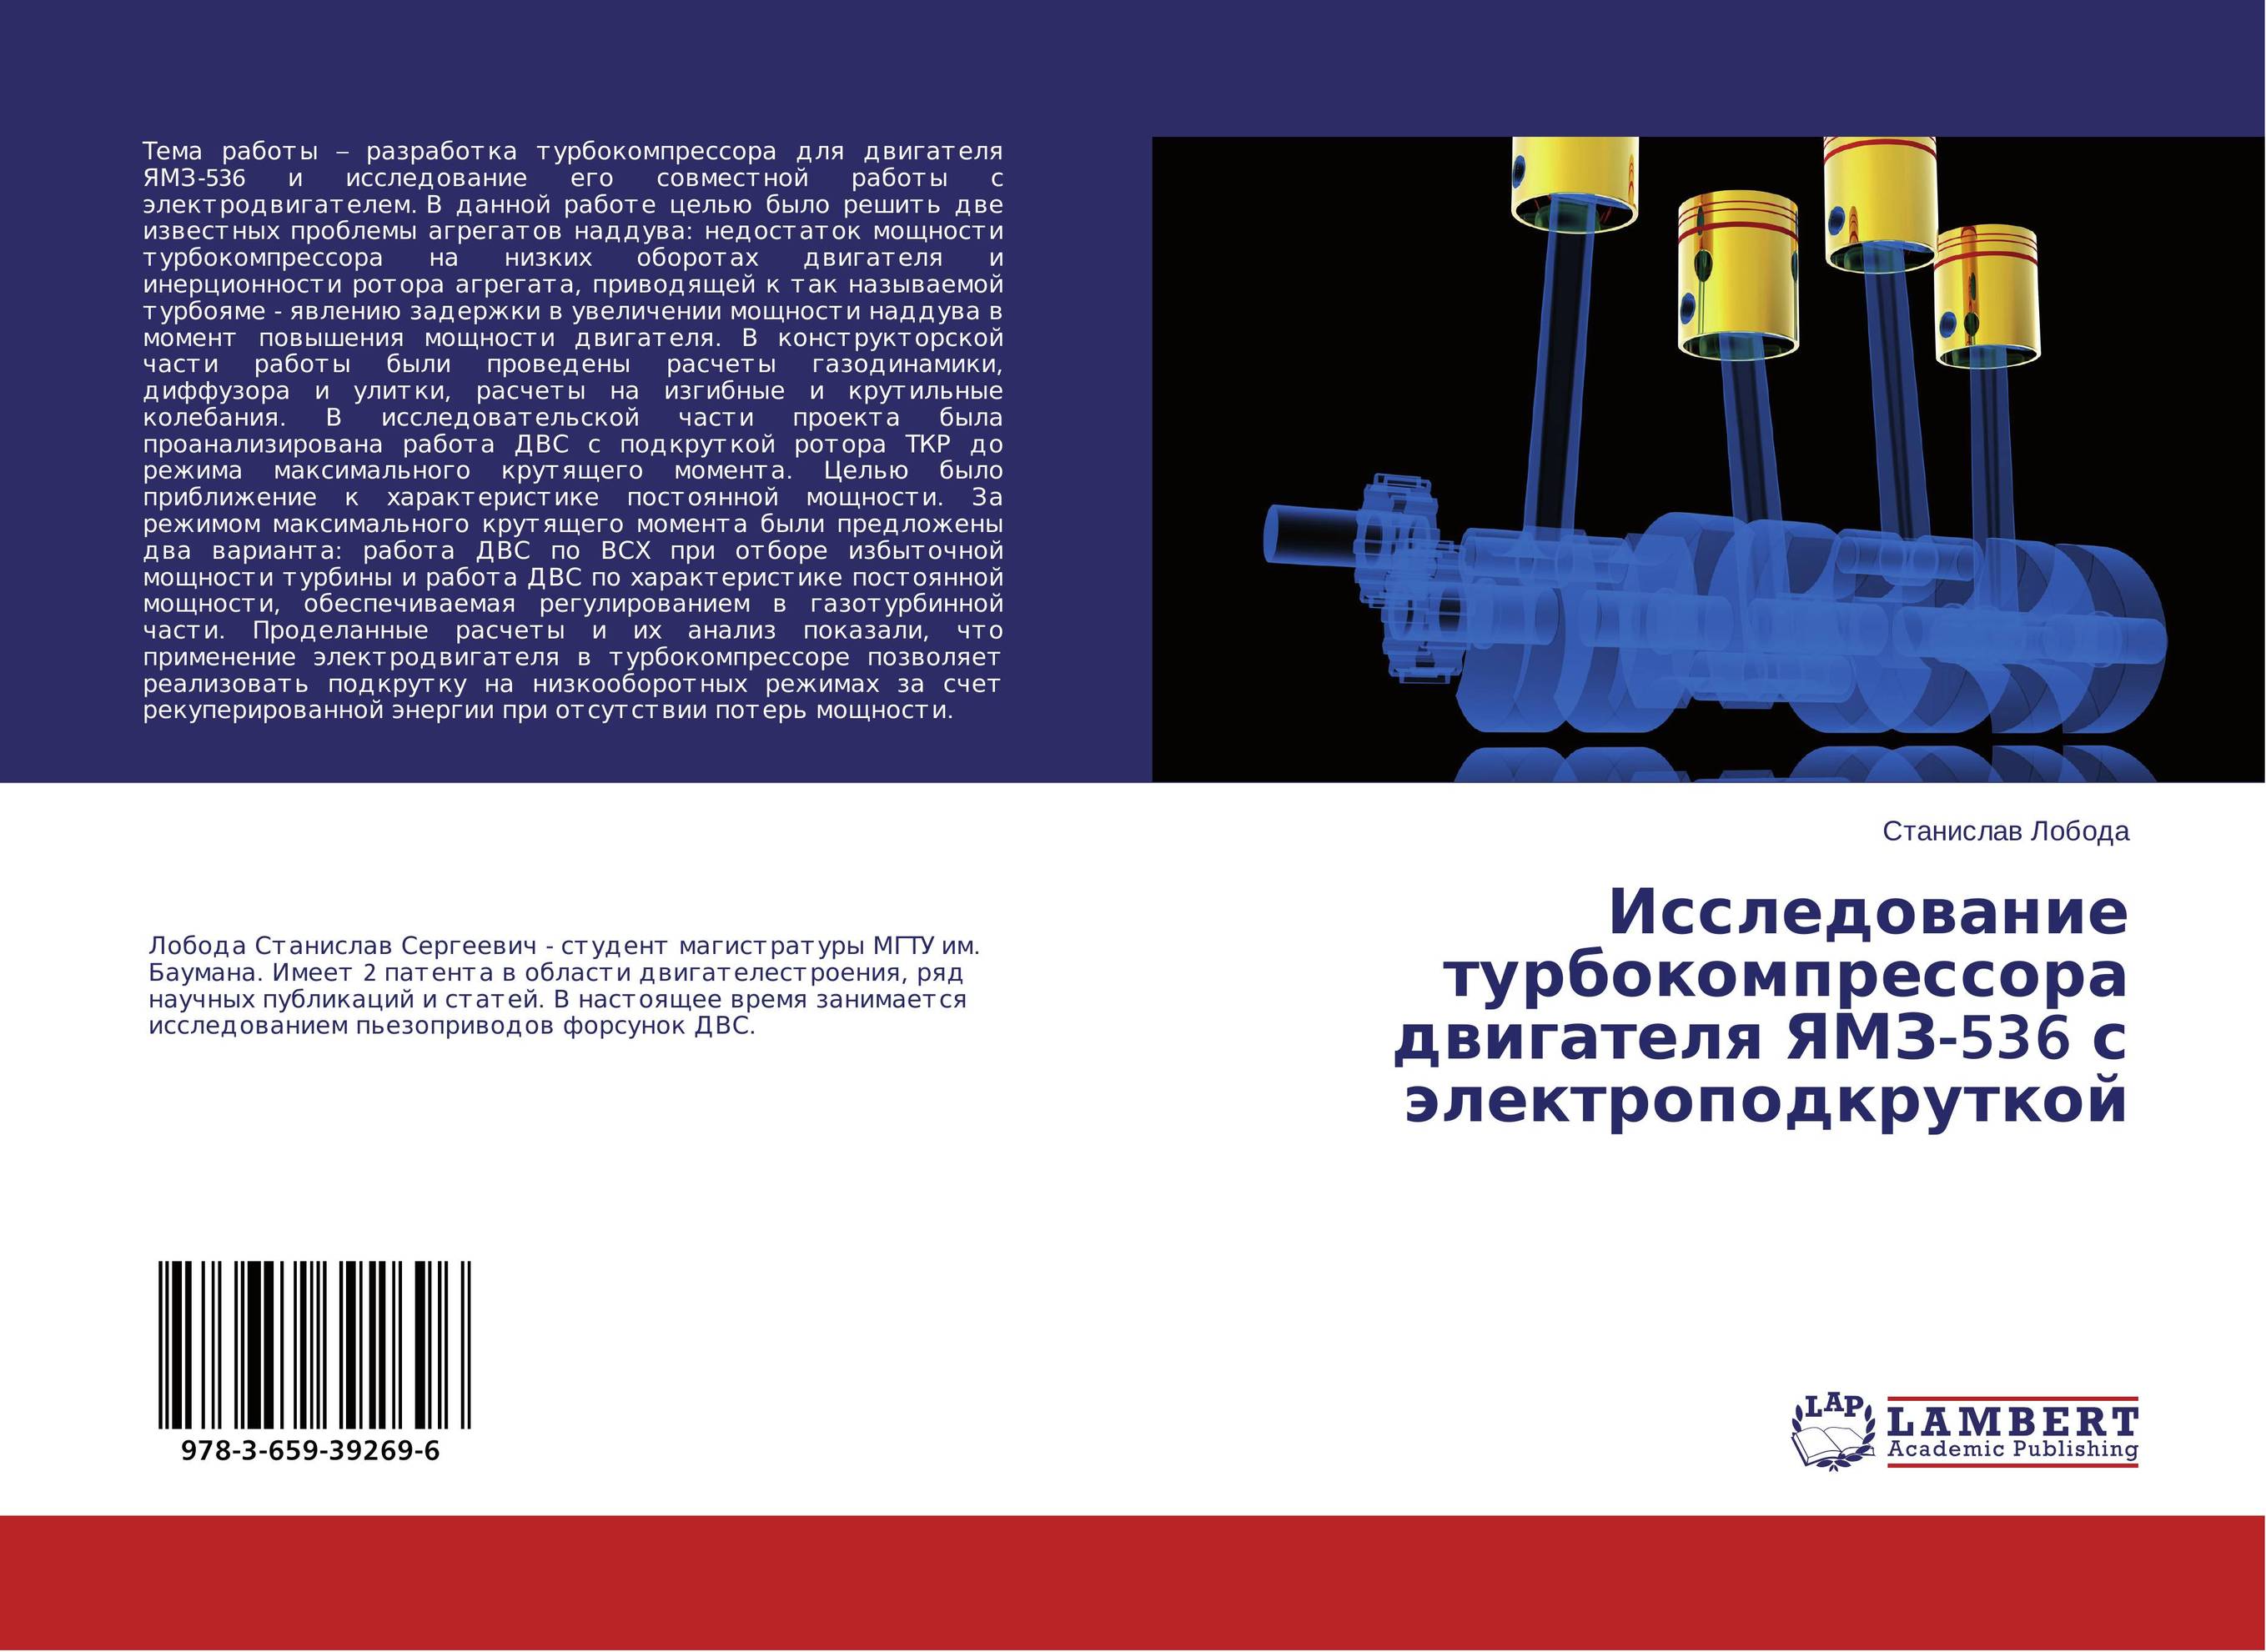 
        Исследование турбокомпрессора двигателя ЯМЗ-536 с электроподкруткой..
      